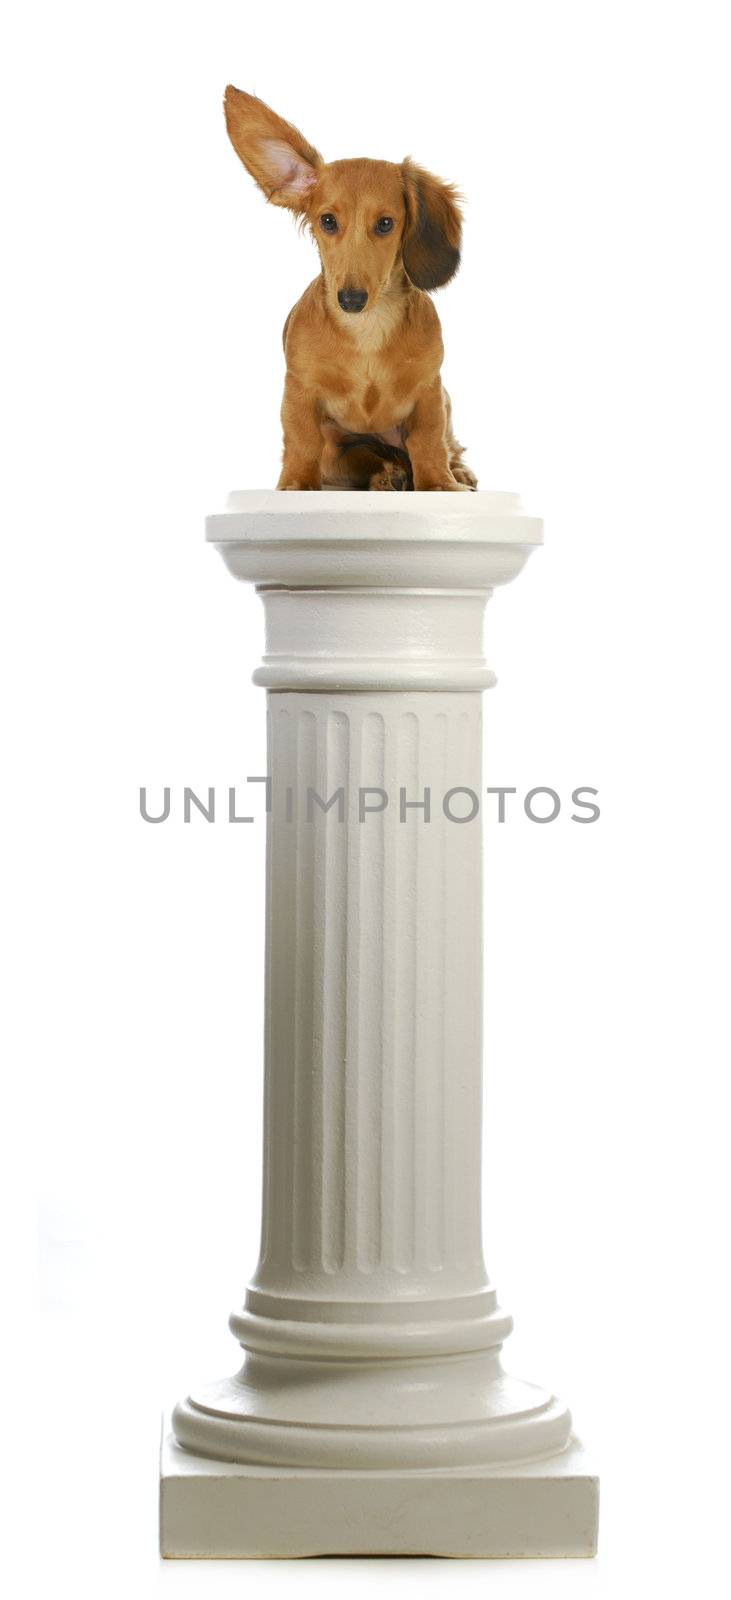 dog sitting on a pedestal - dachshund with ear up listening sitting on pillar